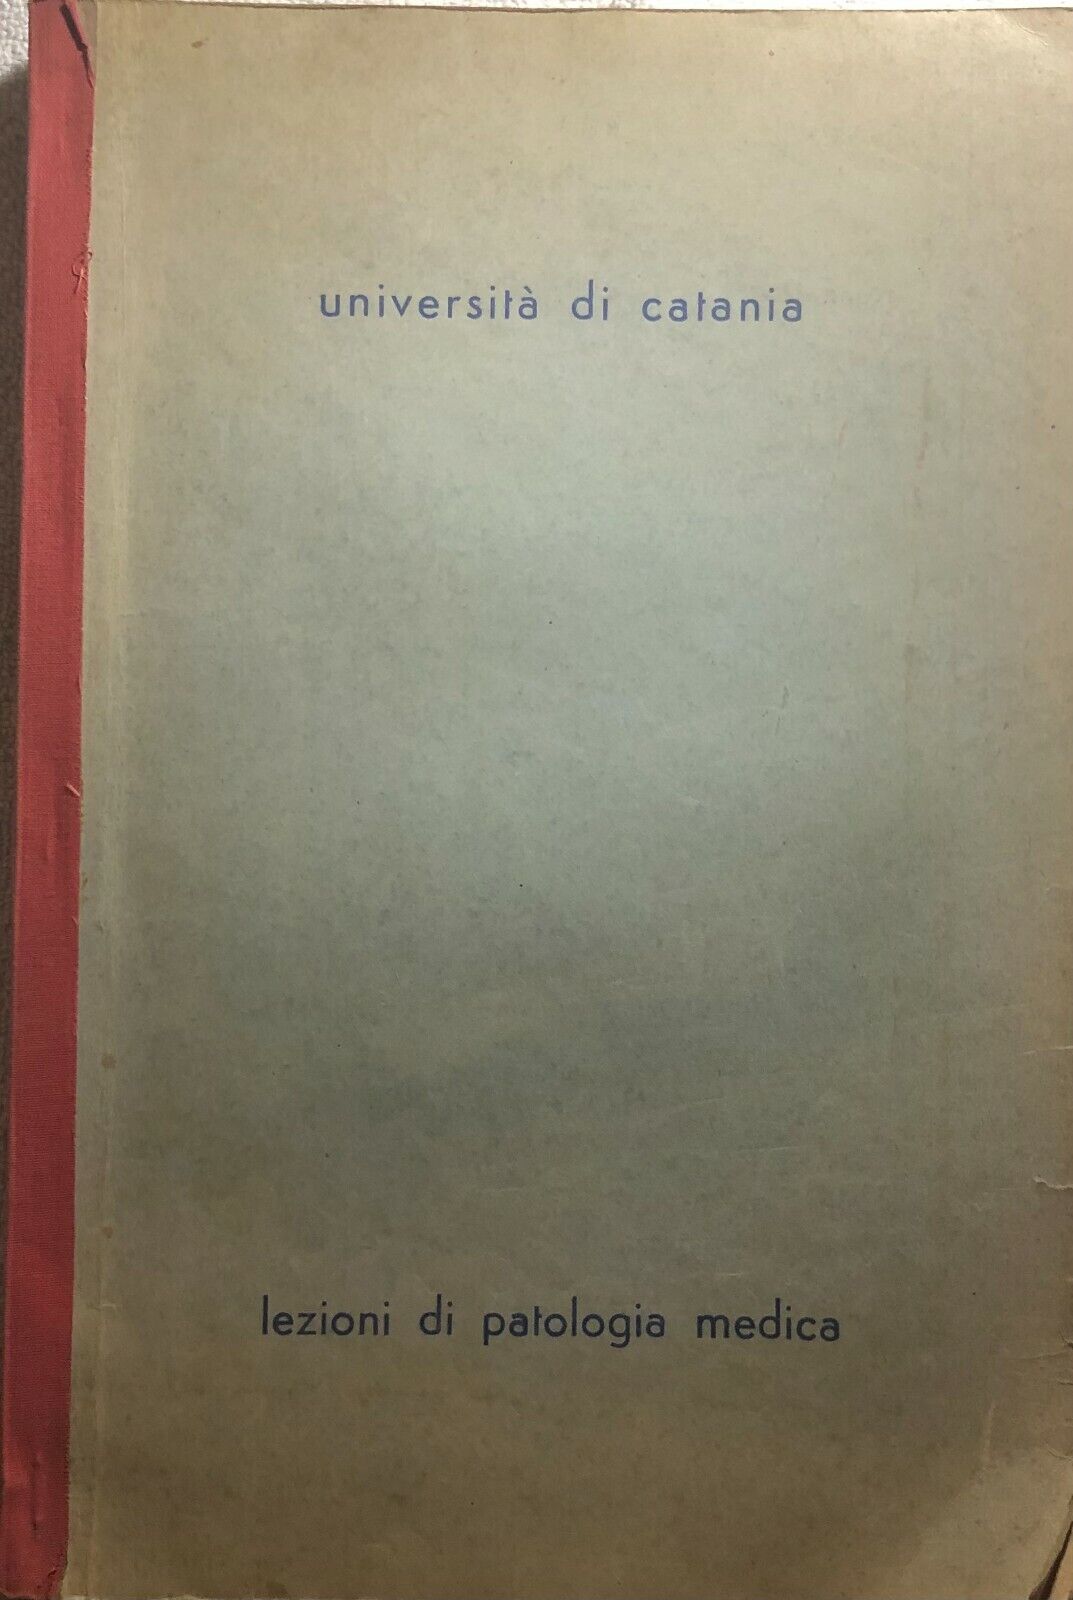 Lezioni di patologia medica di P.p.p.,  Universit? Di Catania